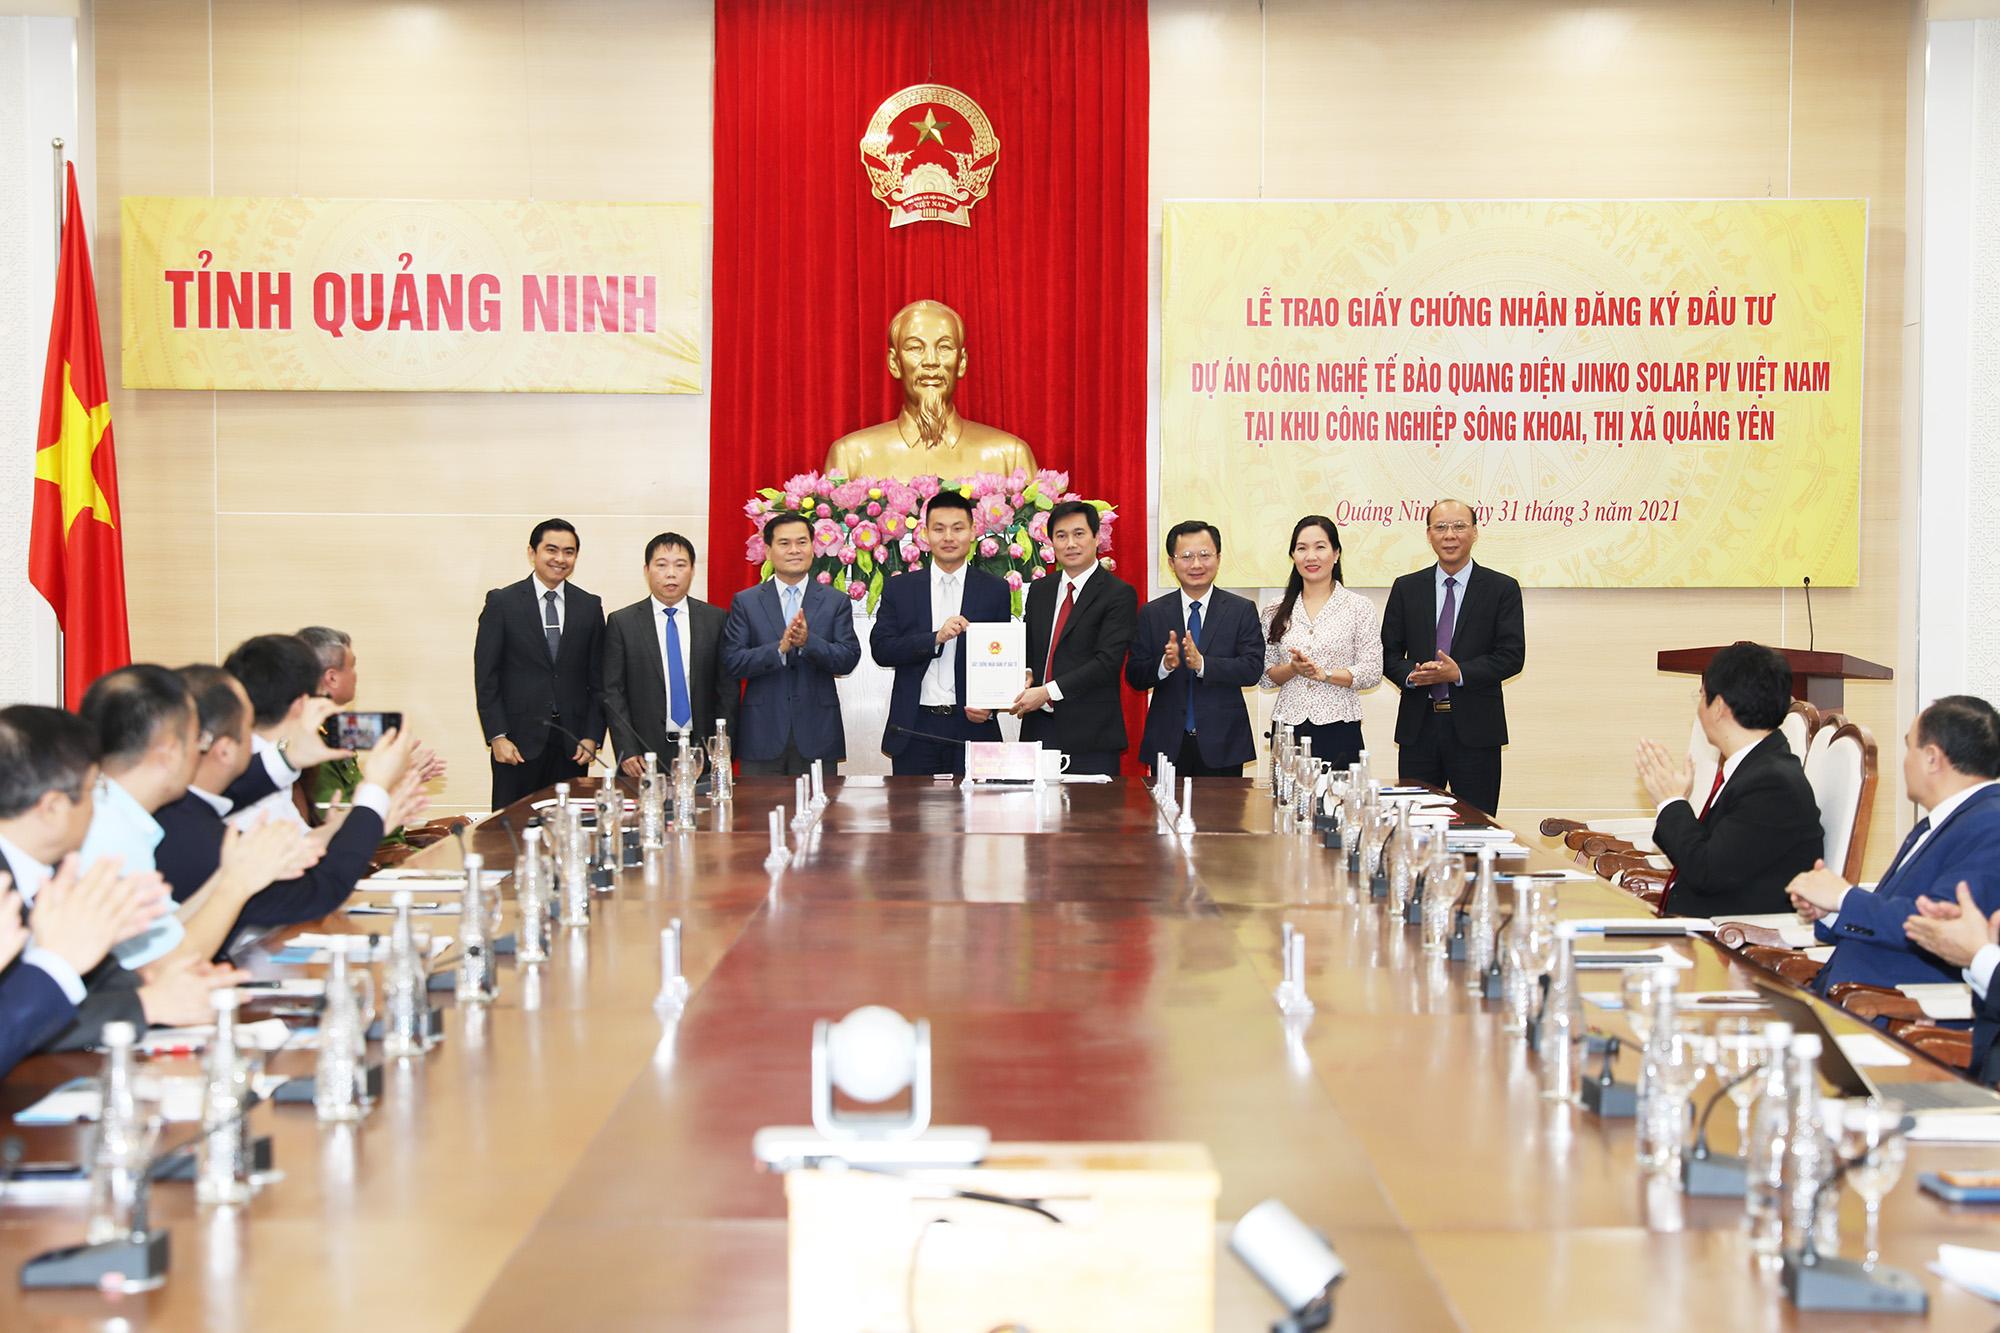 Đồng chí Nguyễn Tường Văn, Phó Bí thư Tỉnh ủy, Chủ tịch UBND tỉnh trao Giấy CNĐKĐT cho đại diện Công ty Jinko Solar Hong Kong